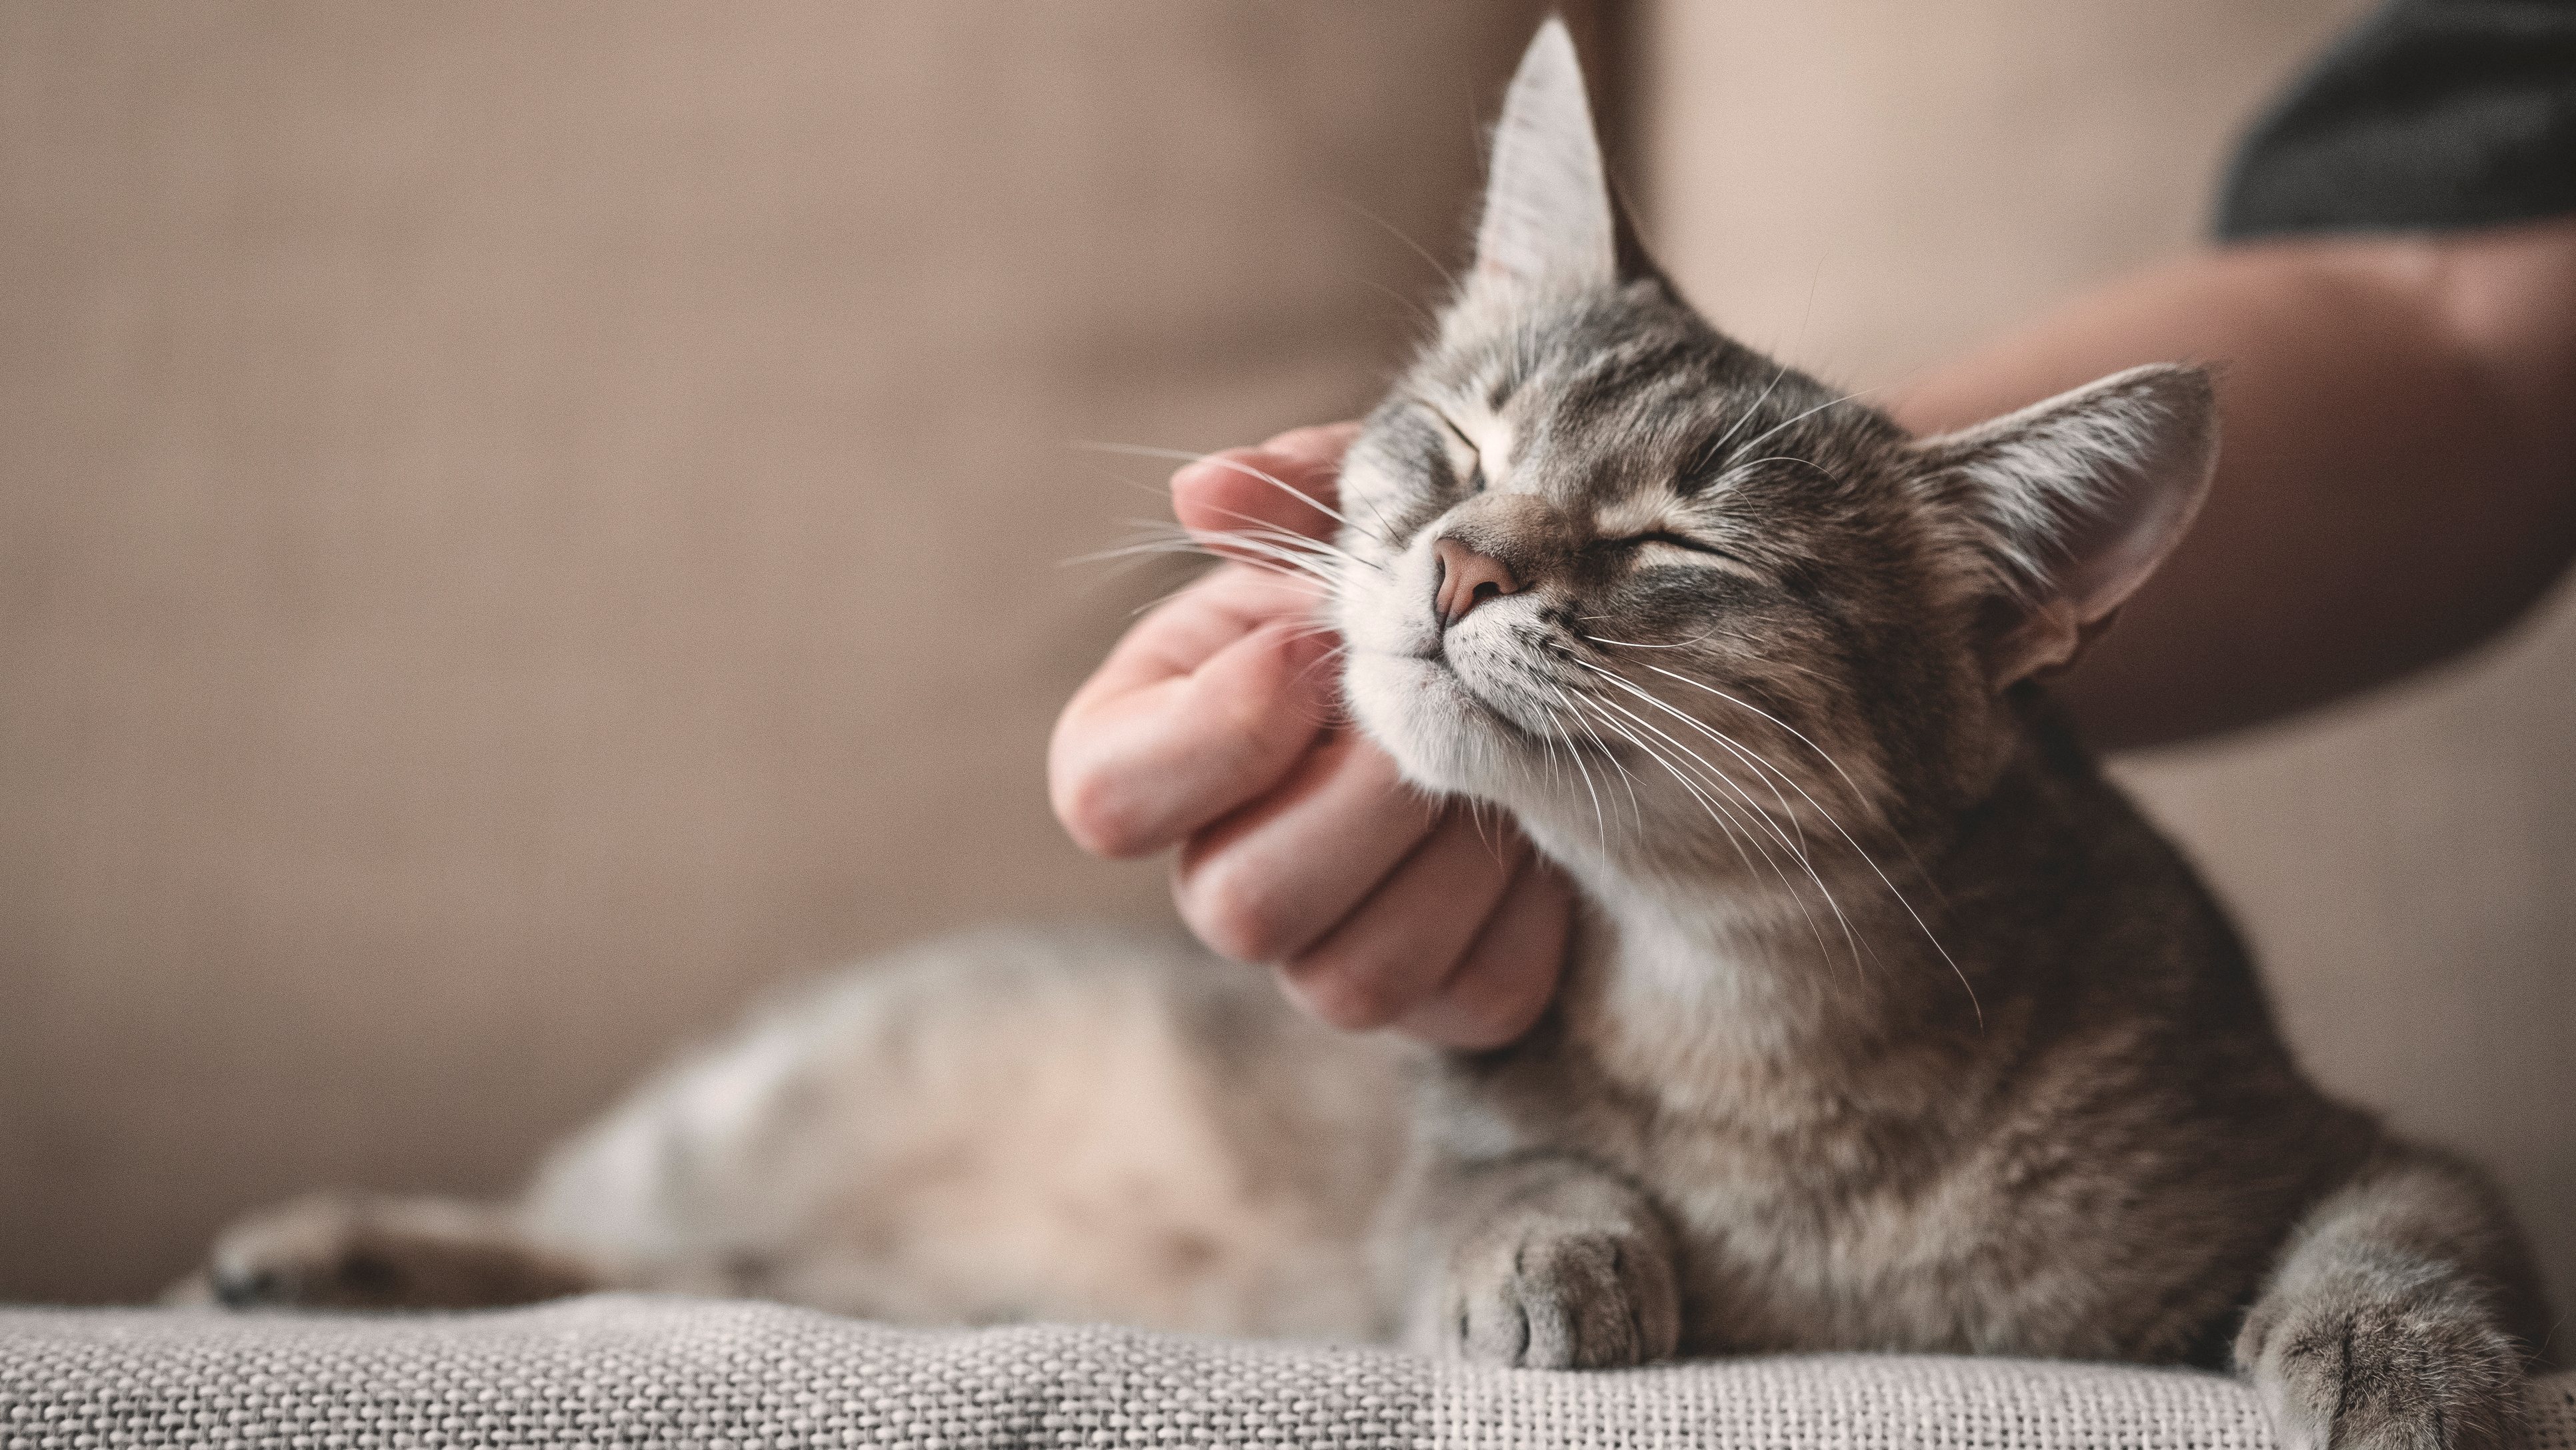 Investigadores acreditam que os casos de transmissão de gatos para humanos serão provavelmente raros